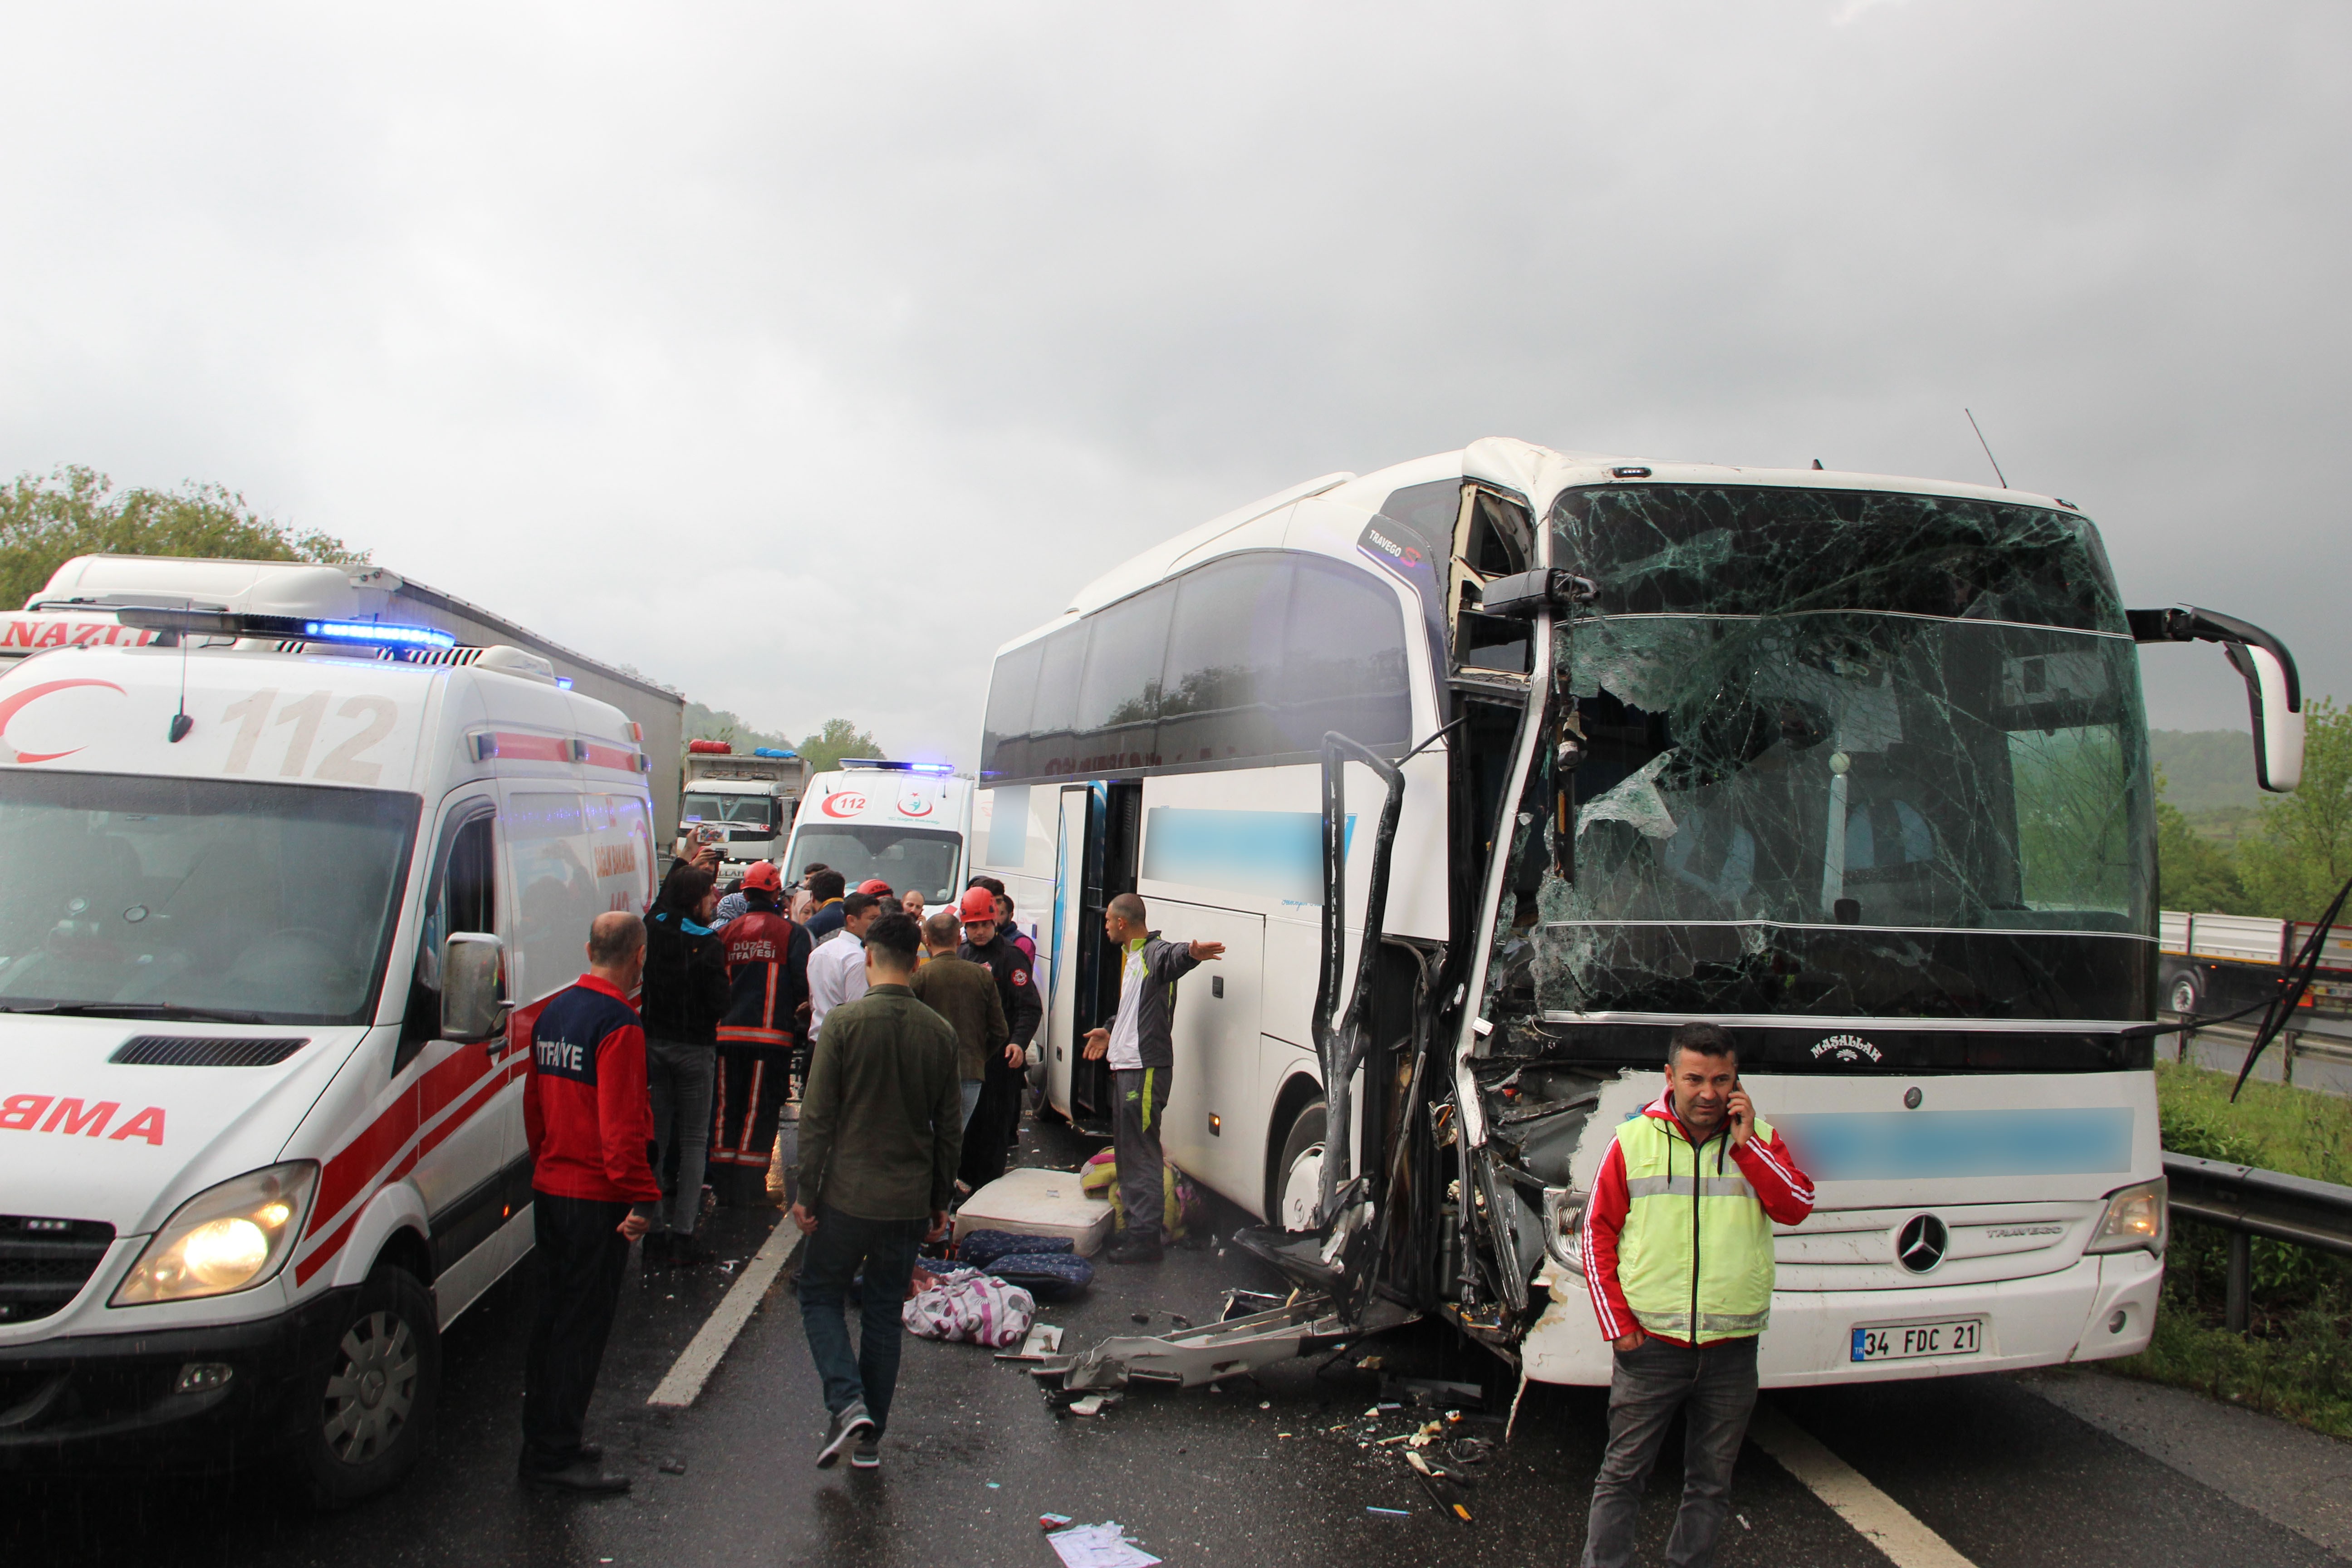 TEM’de otobüs tıra çarptı: 7 yaralı